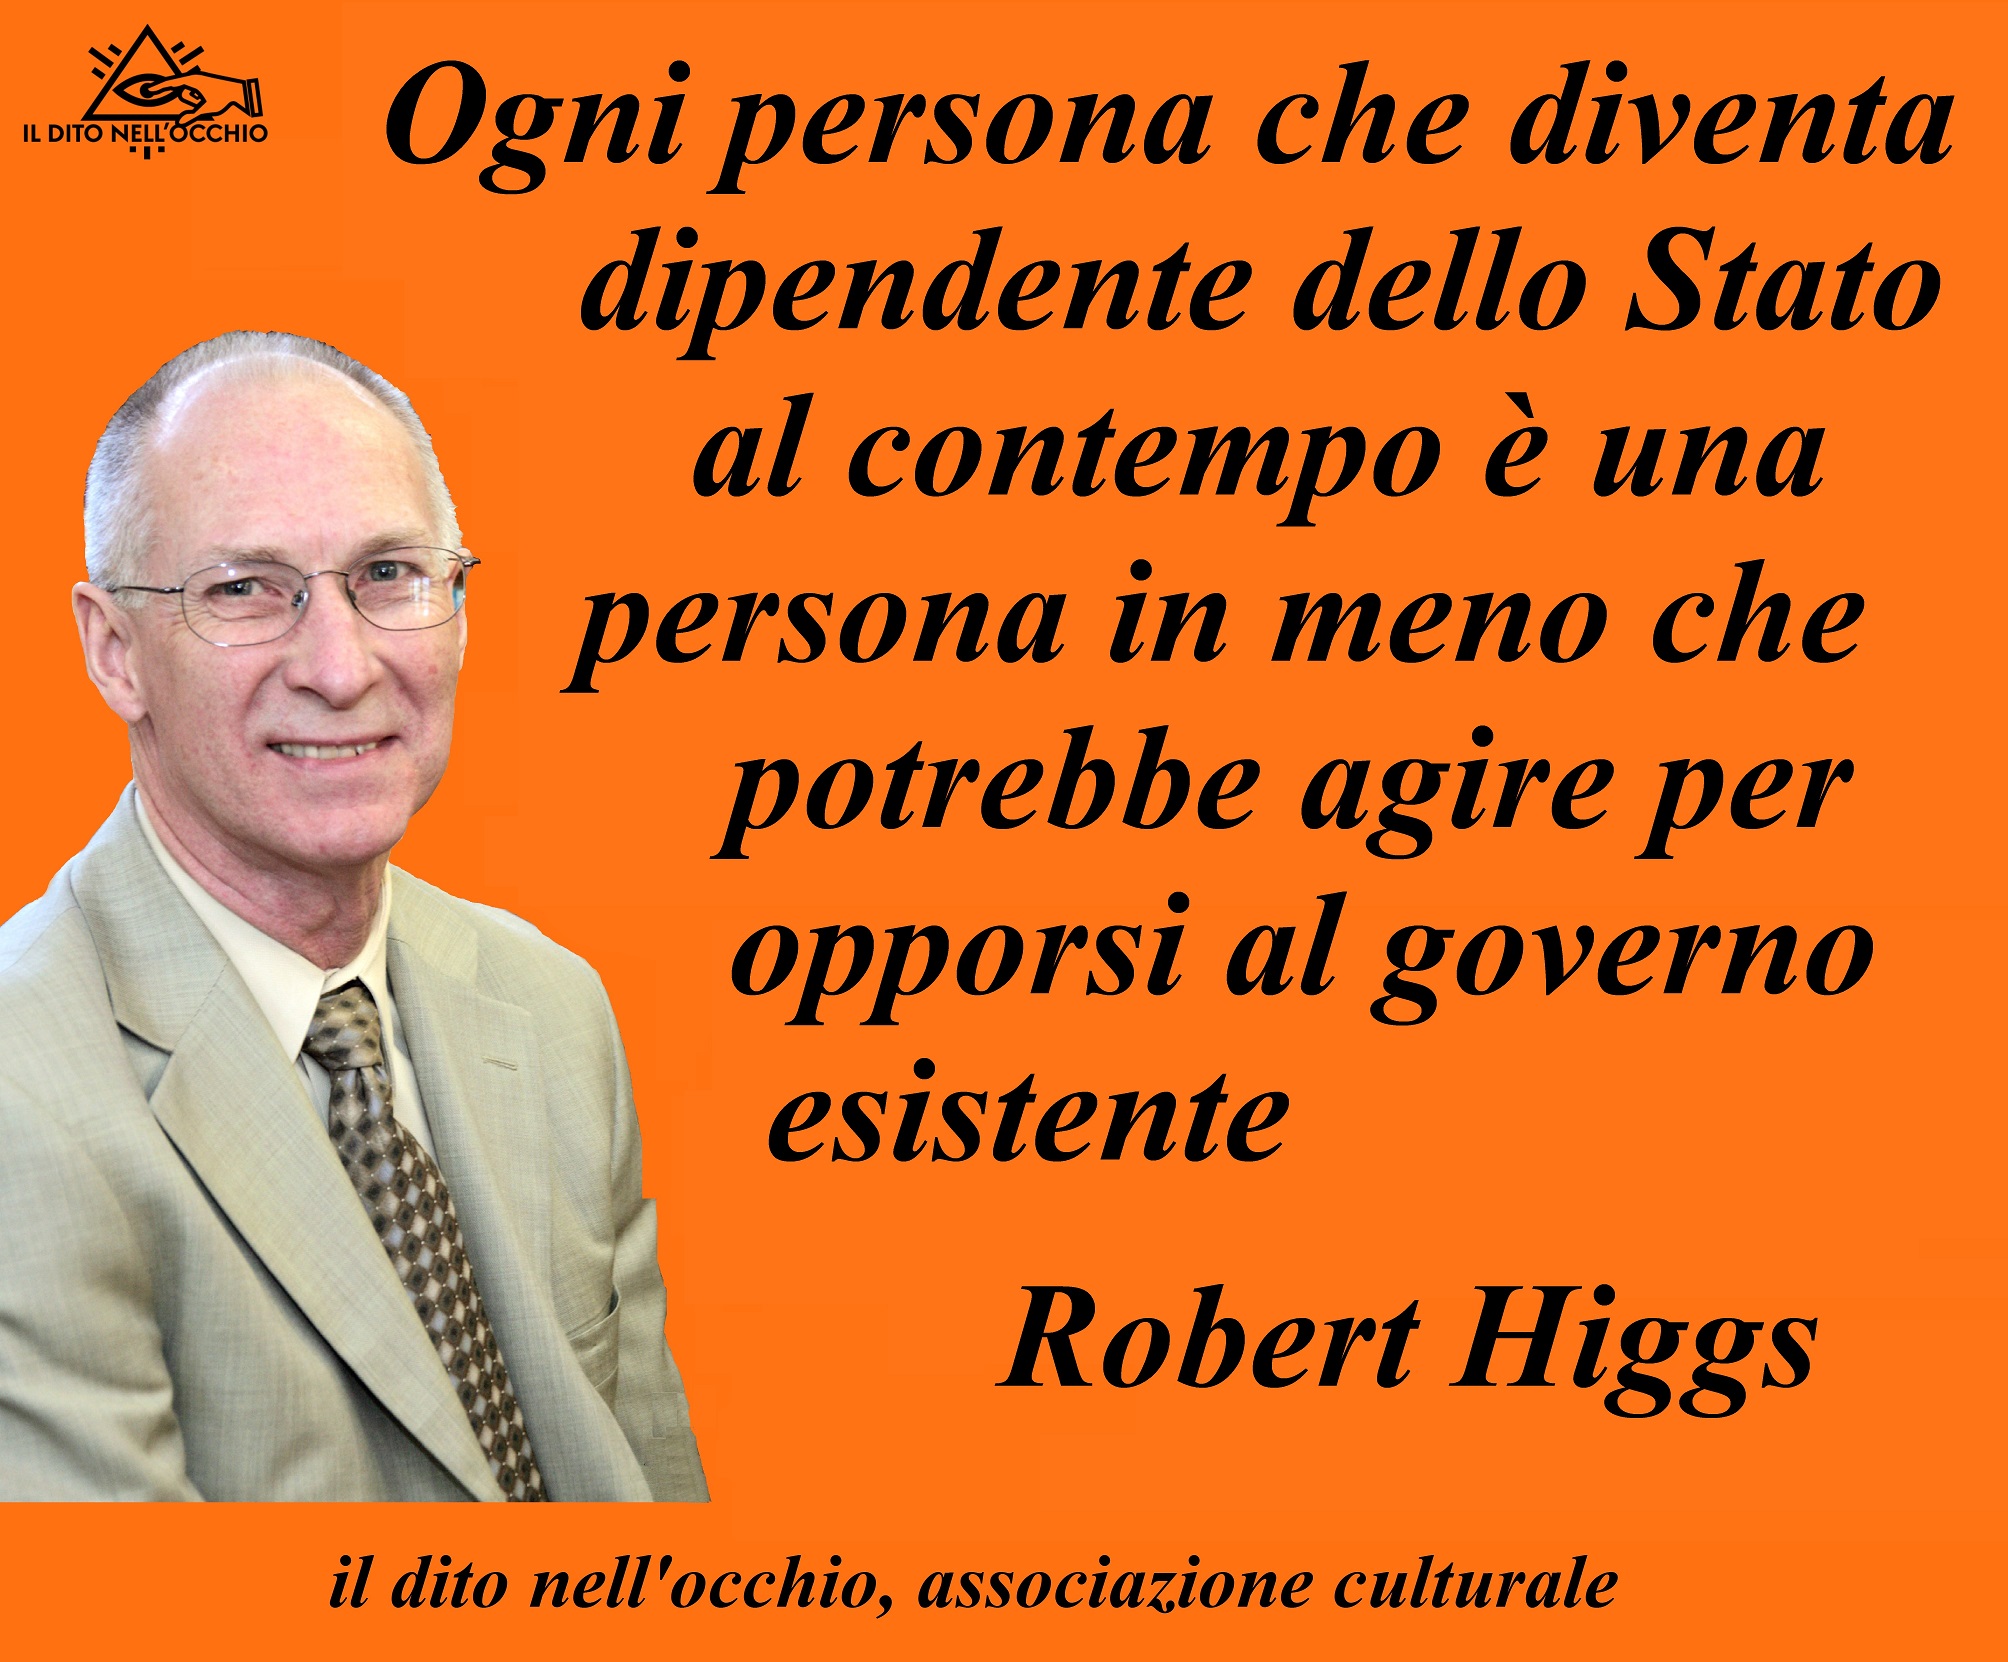 Robert Higgs